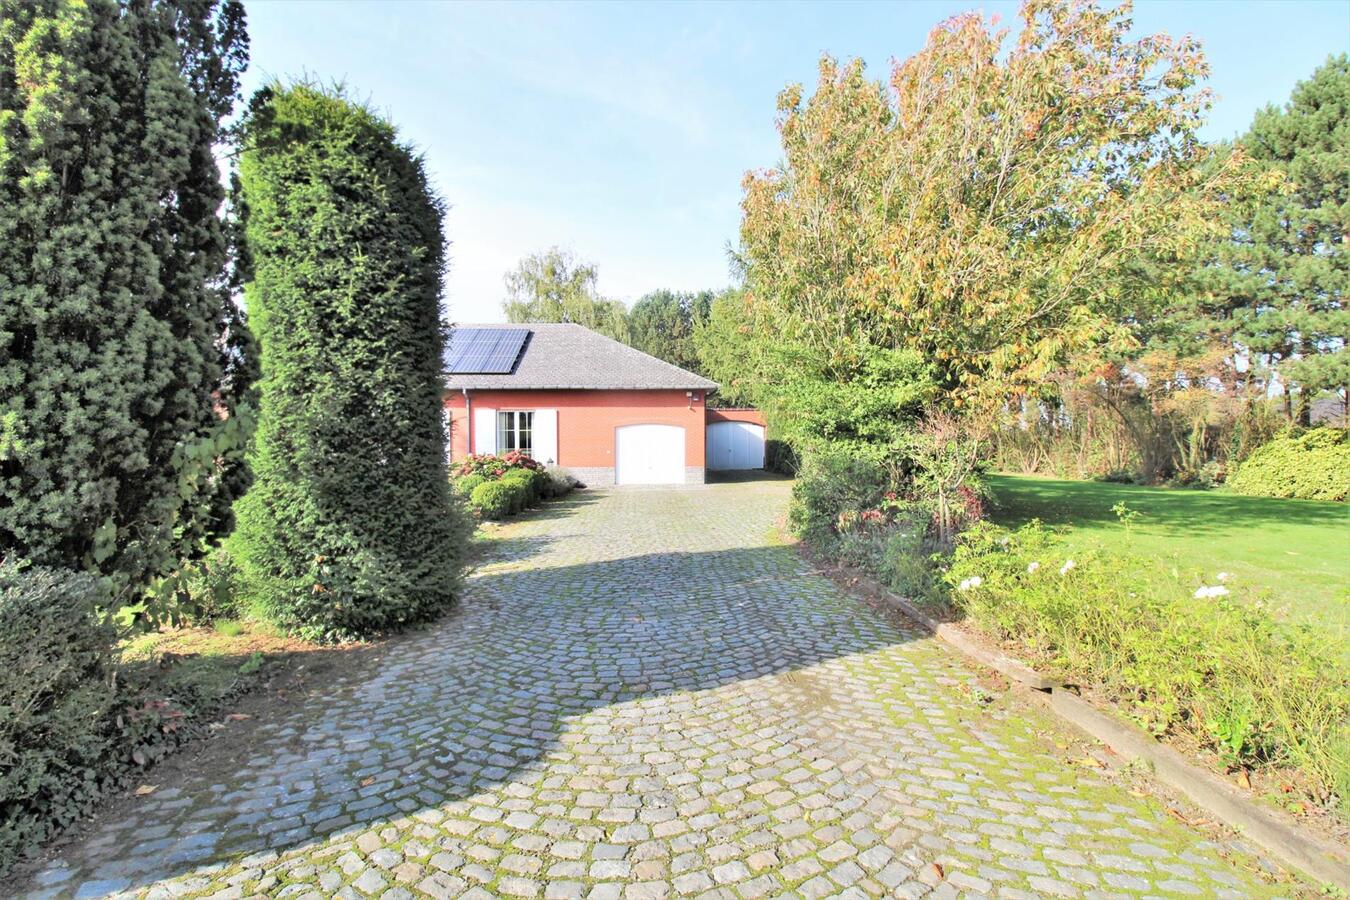 Property sold in Lubbeek